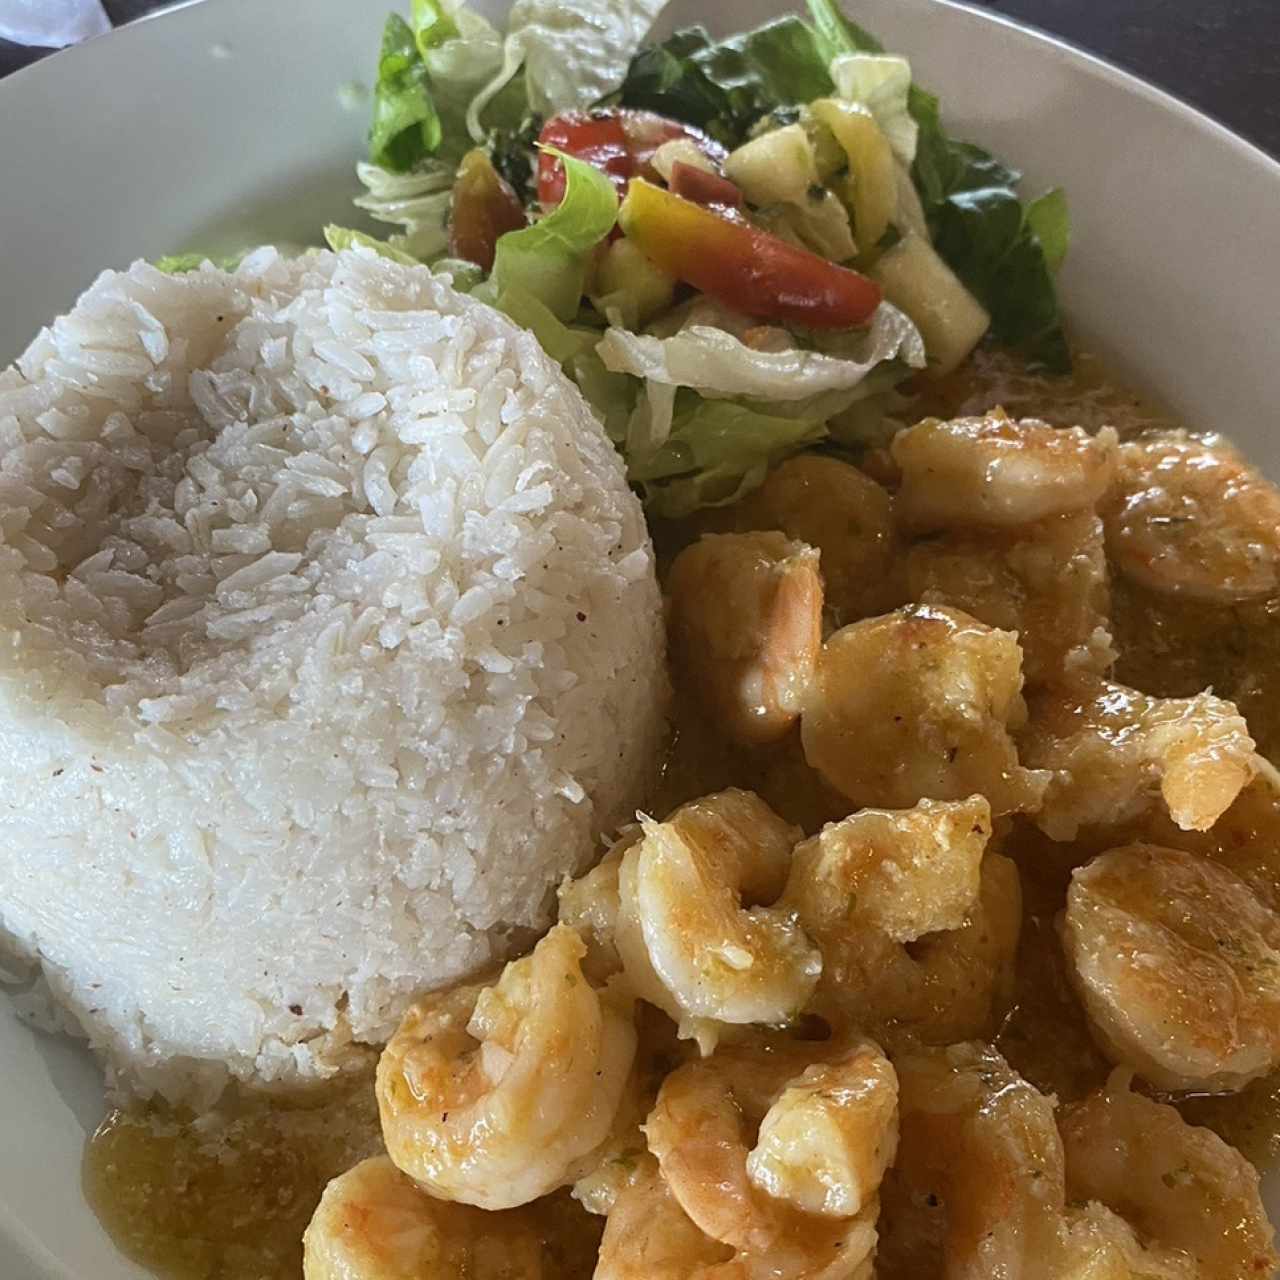 Mariscos - Camarones / shrimps con arroz con coco